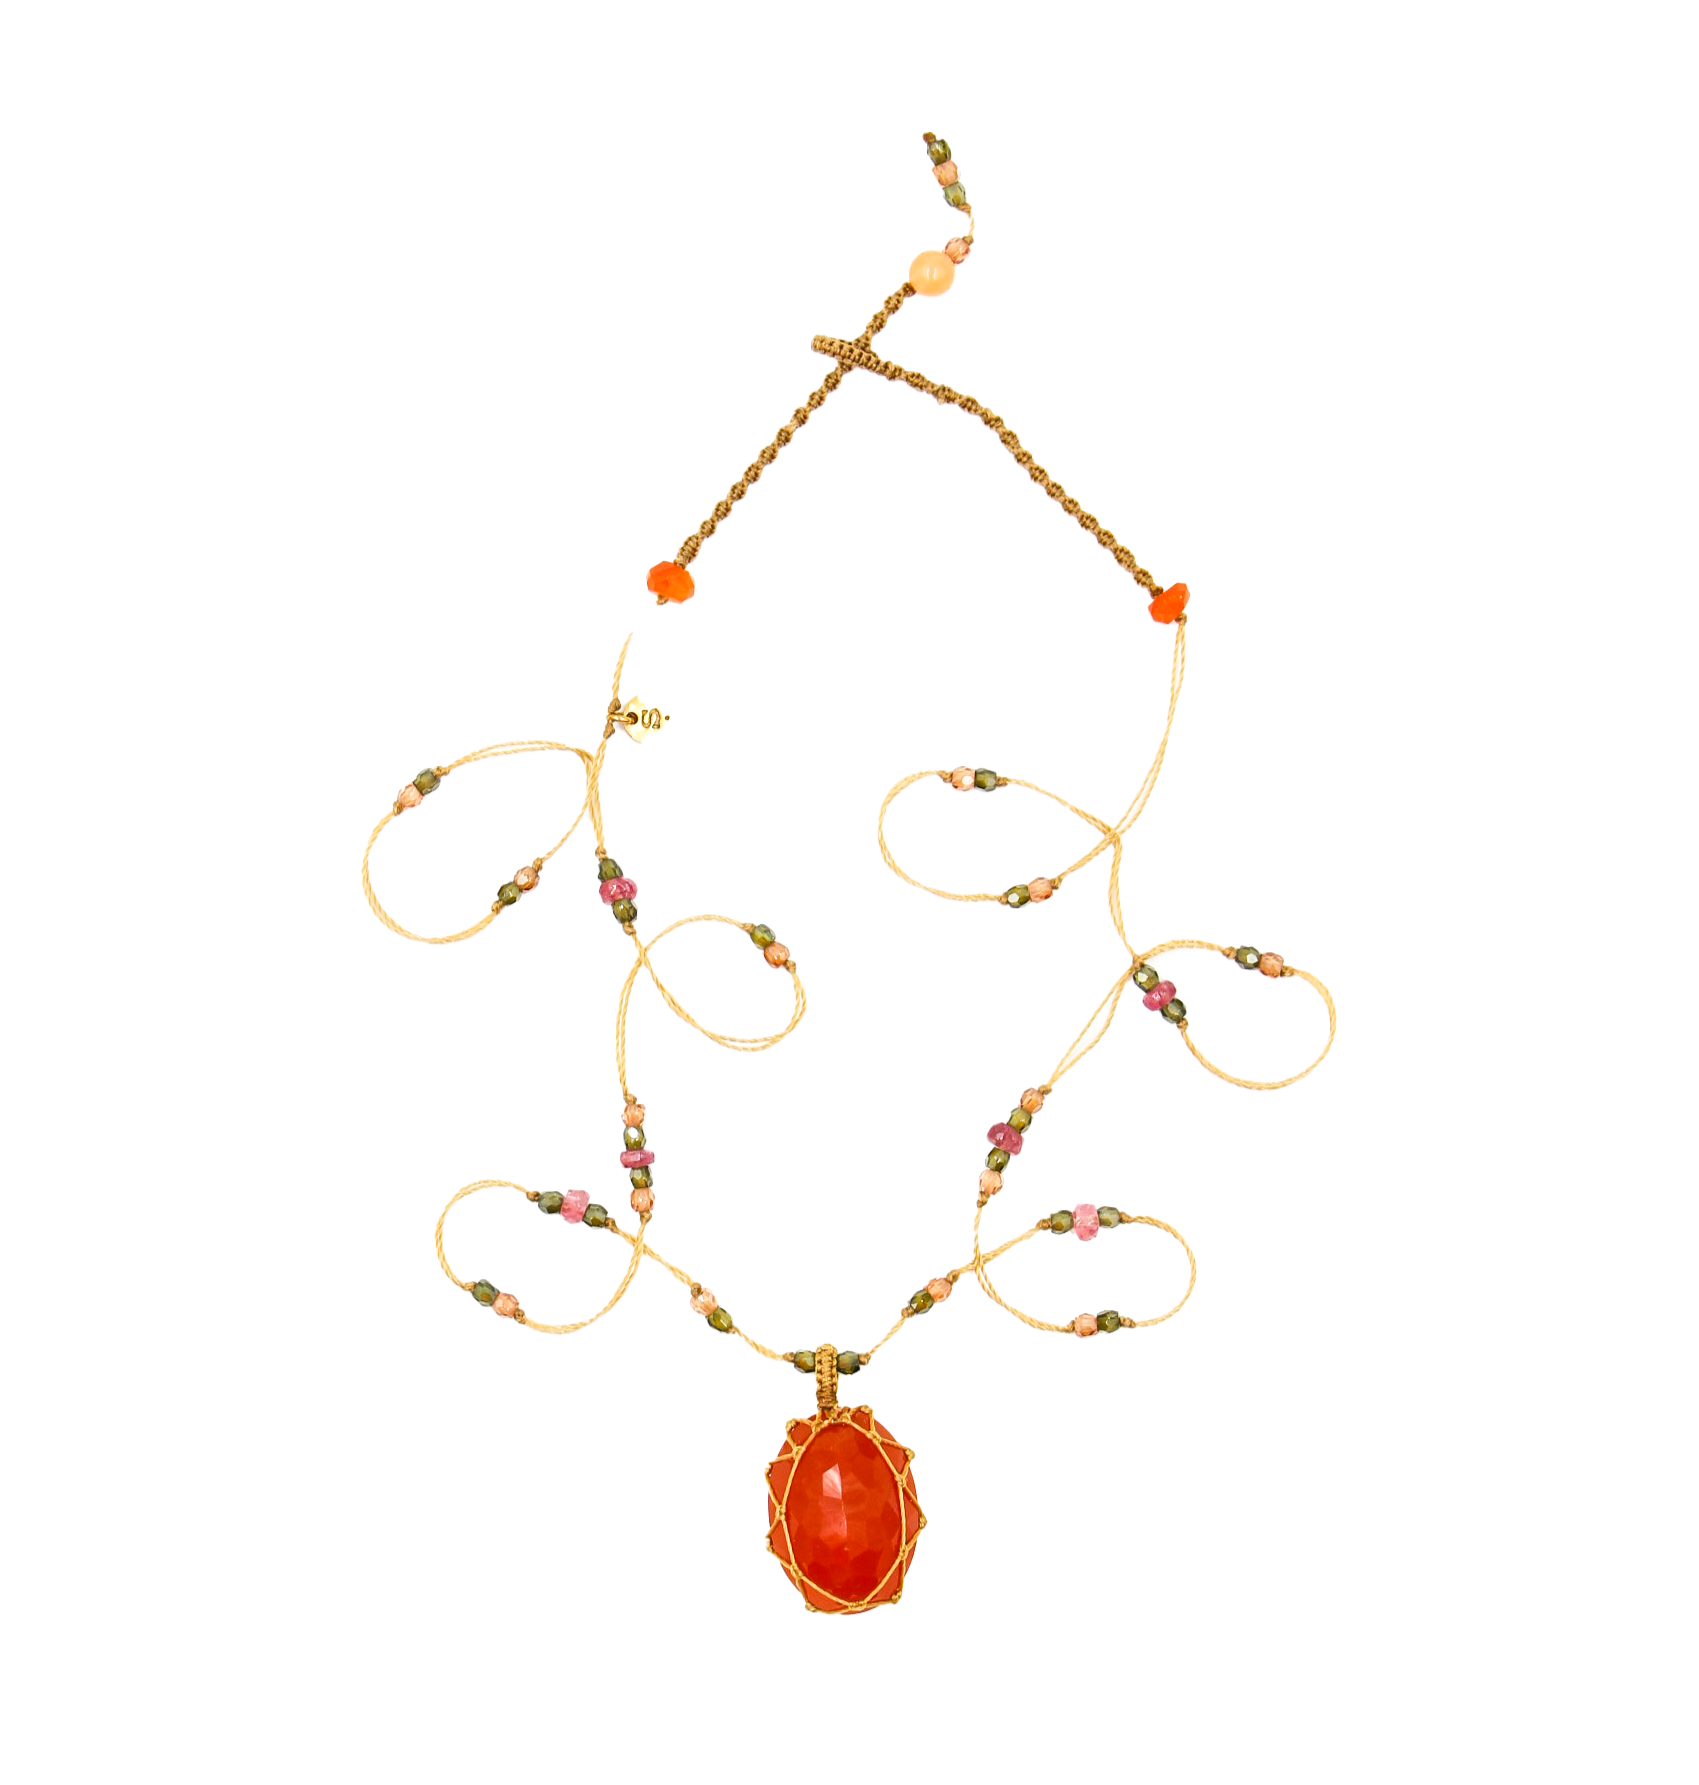 Tibetan Short Necklace - Orange Onyx - Mix Pink Tourmaline - Beige Thread